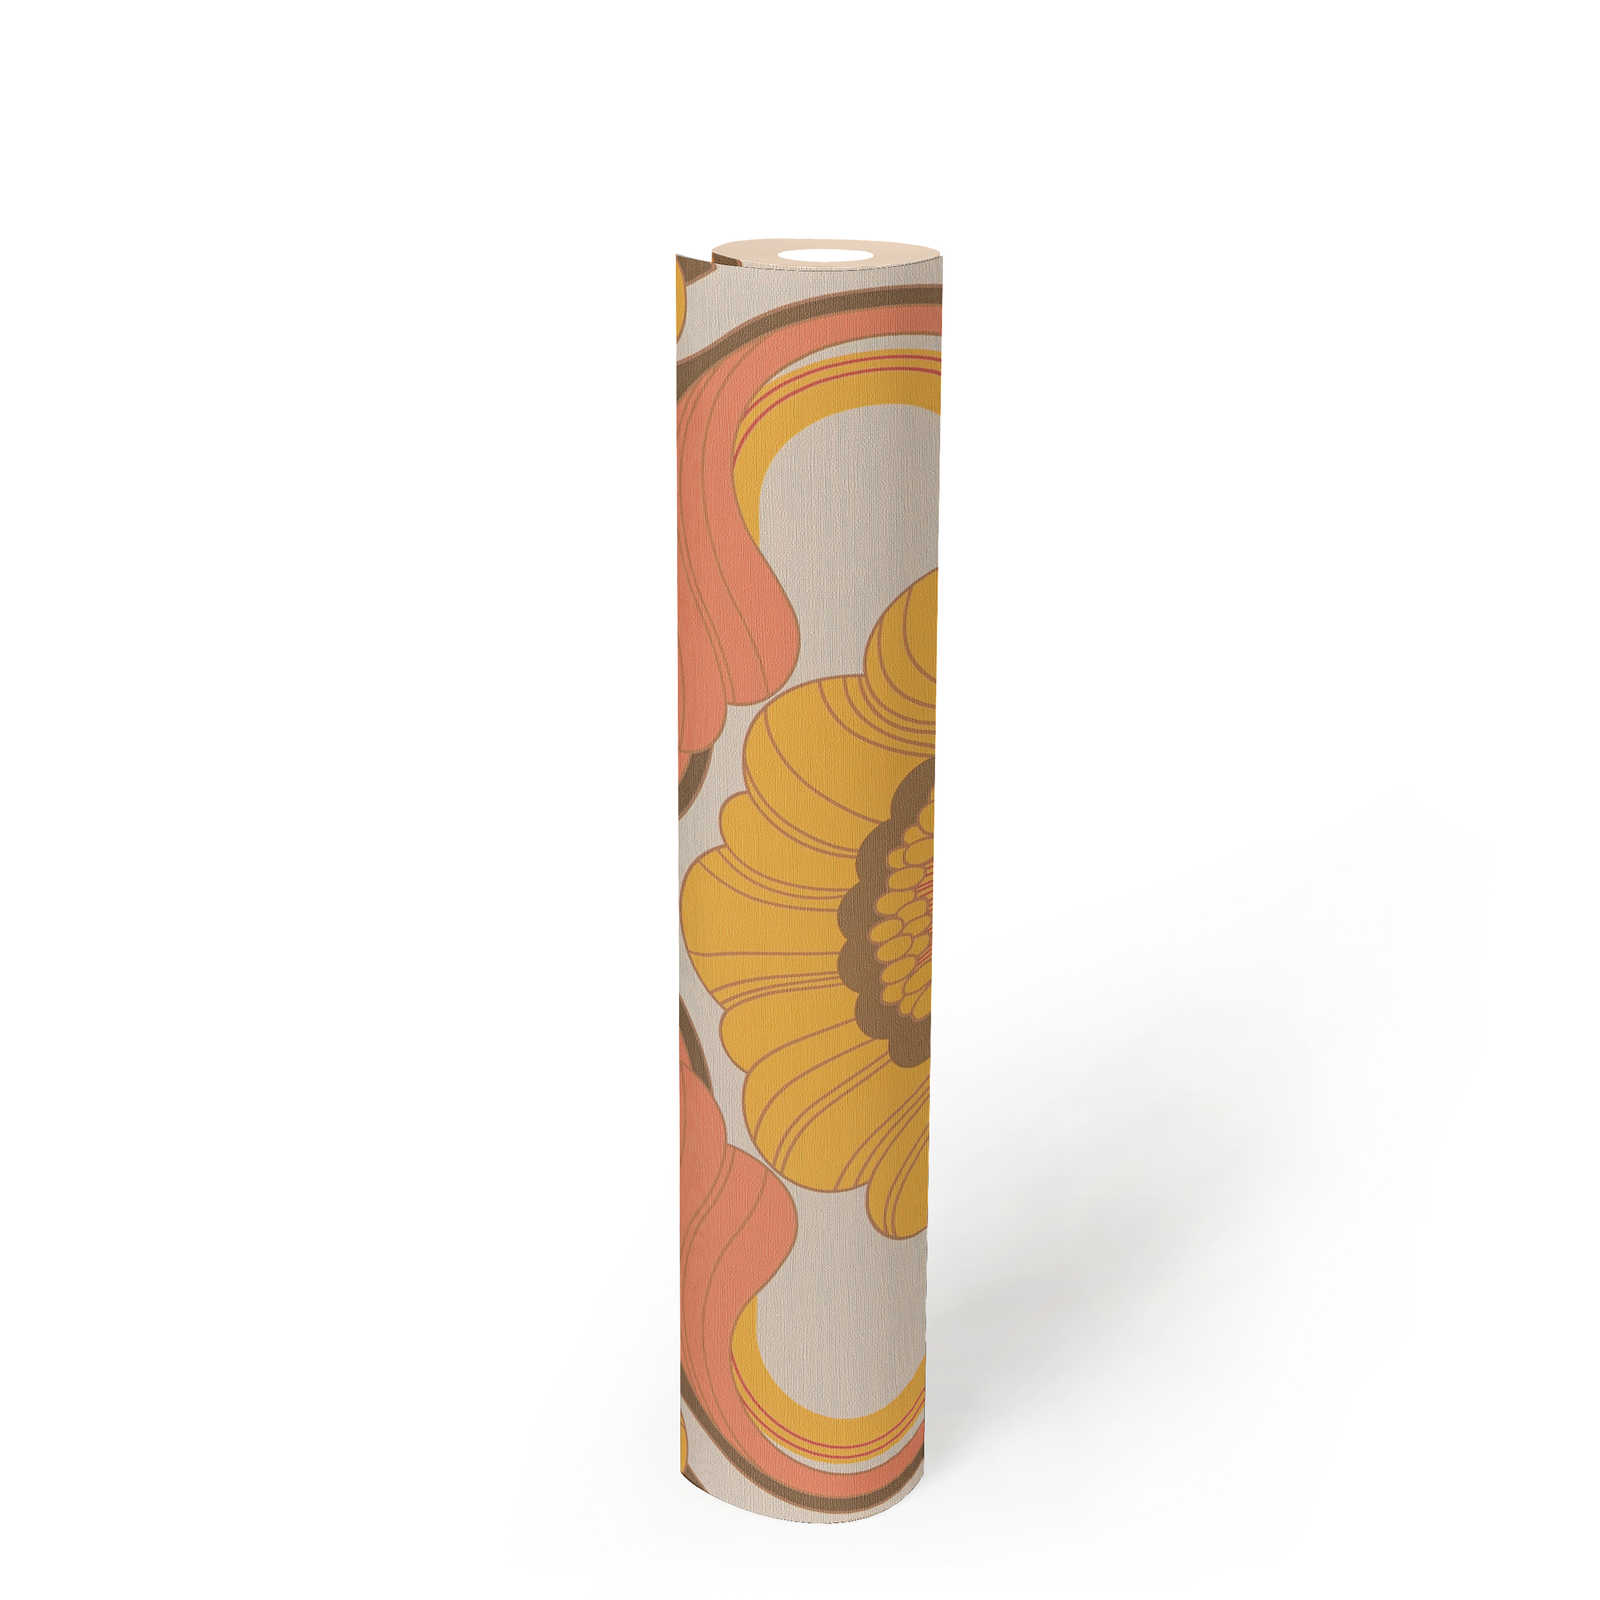             Florale Retro Tapete mit Blumenmuster in warmen Farben – Braun, Gelb, Orange
        